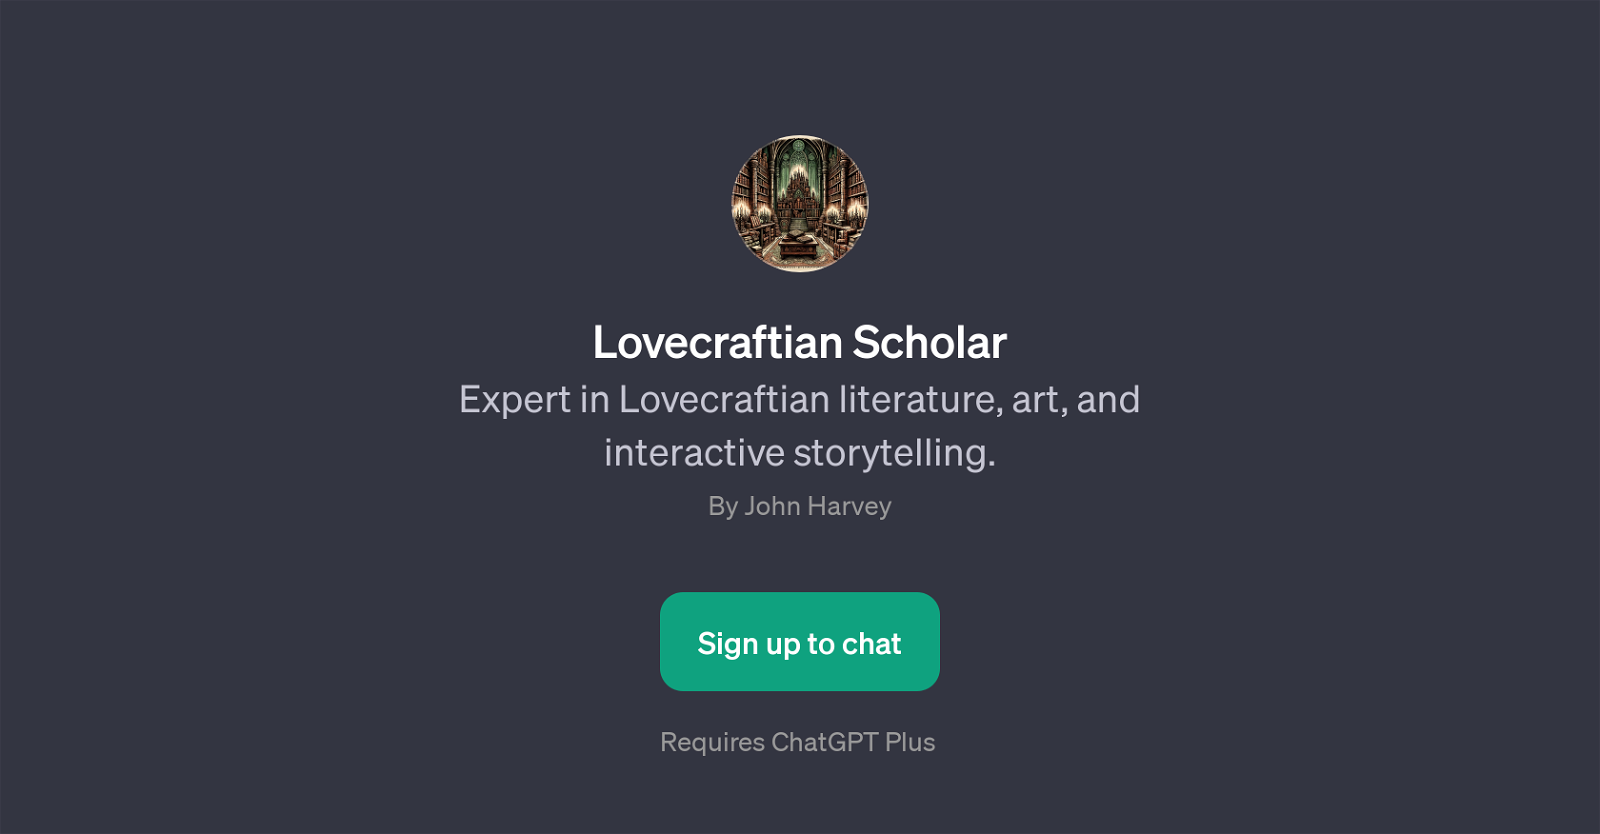 Lovecraftian Scholar website